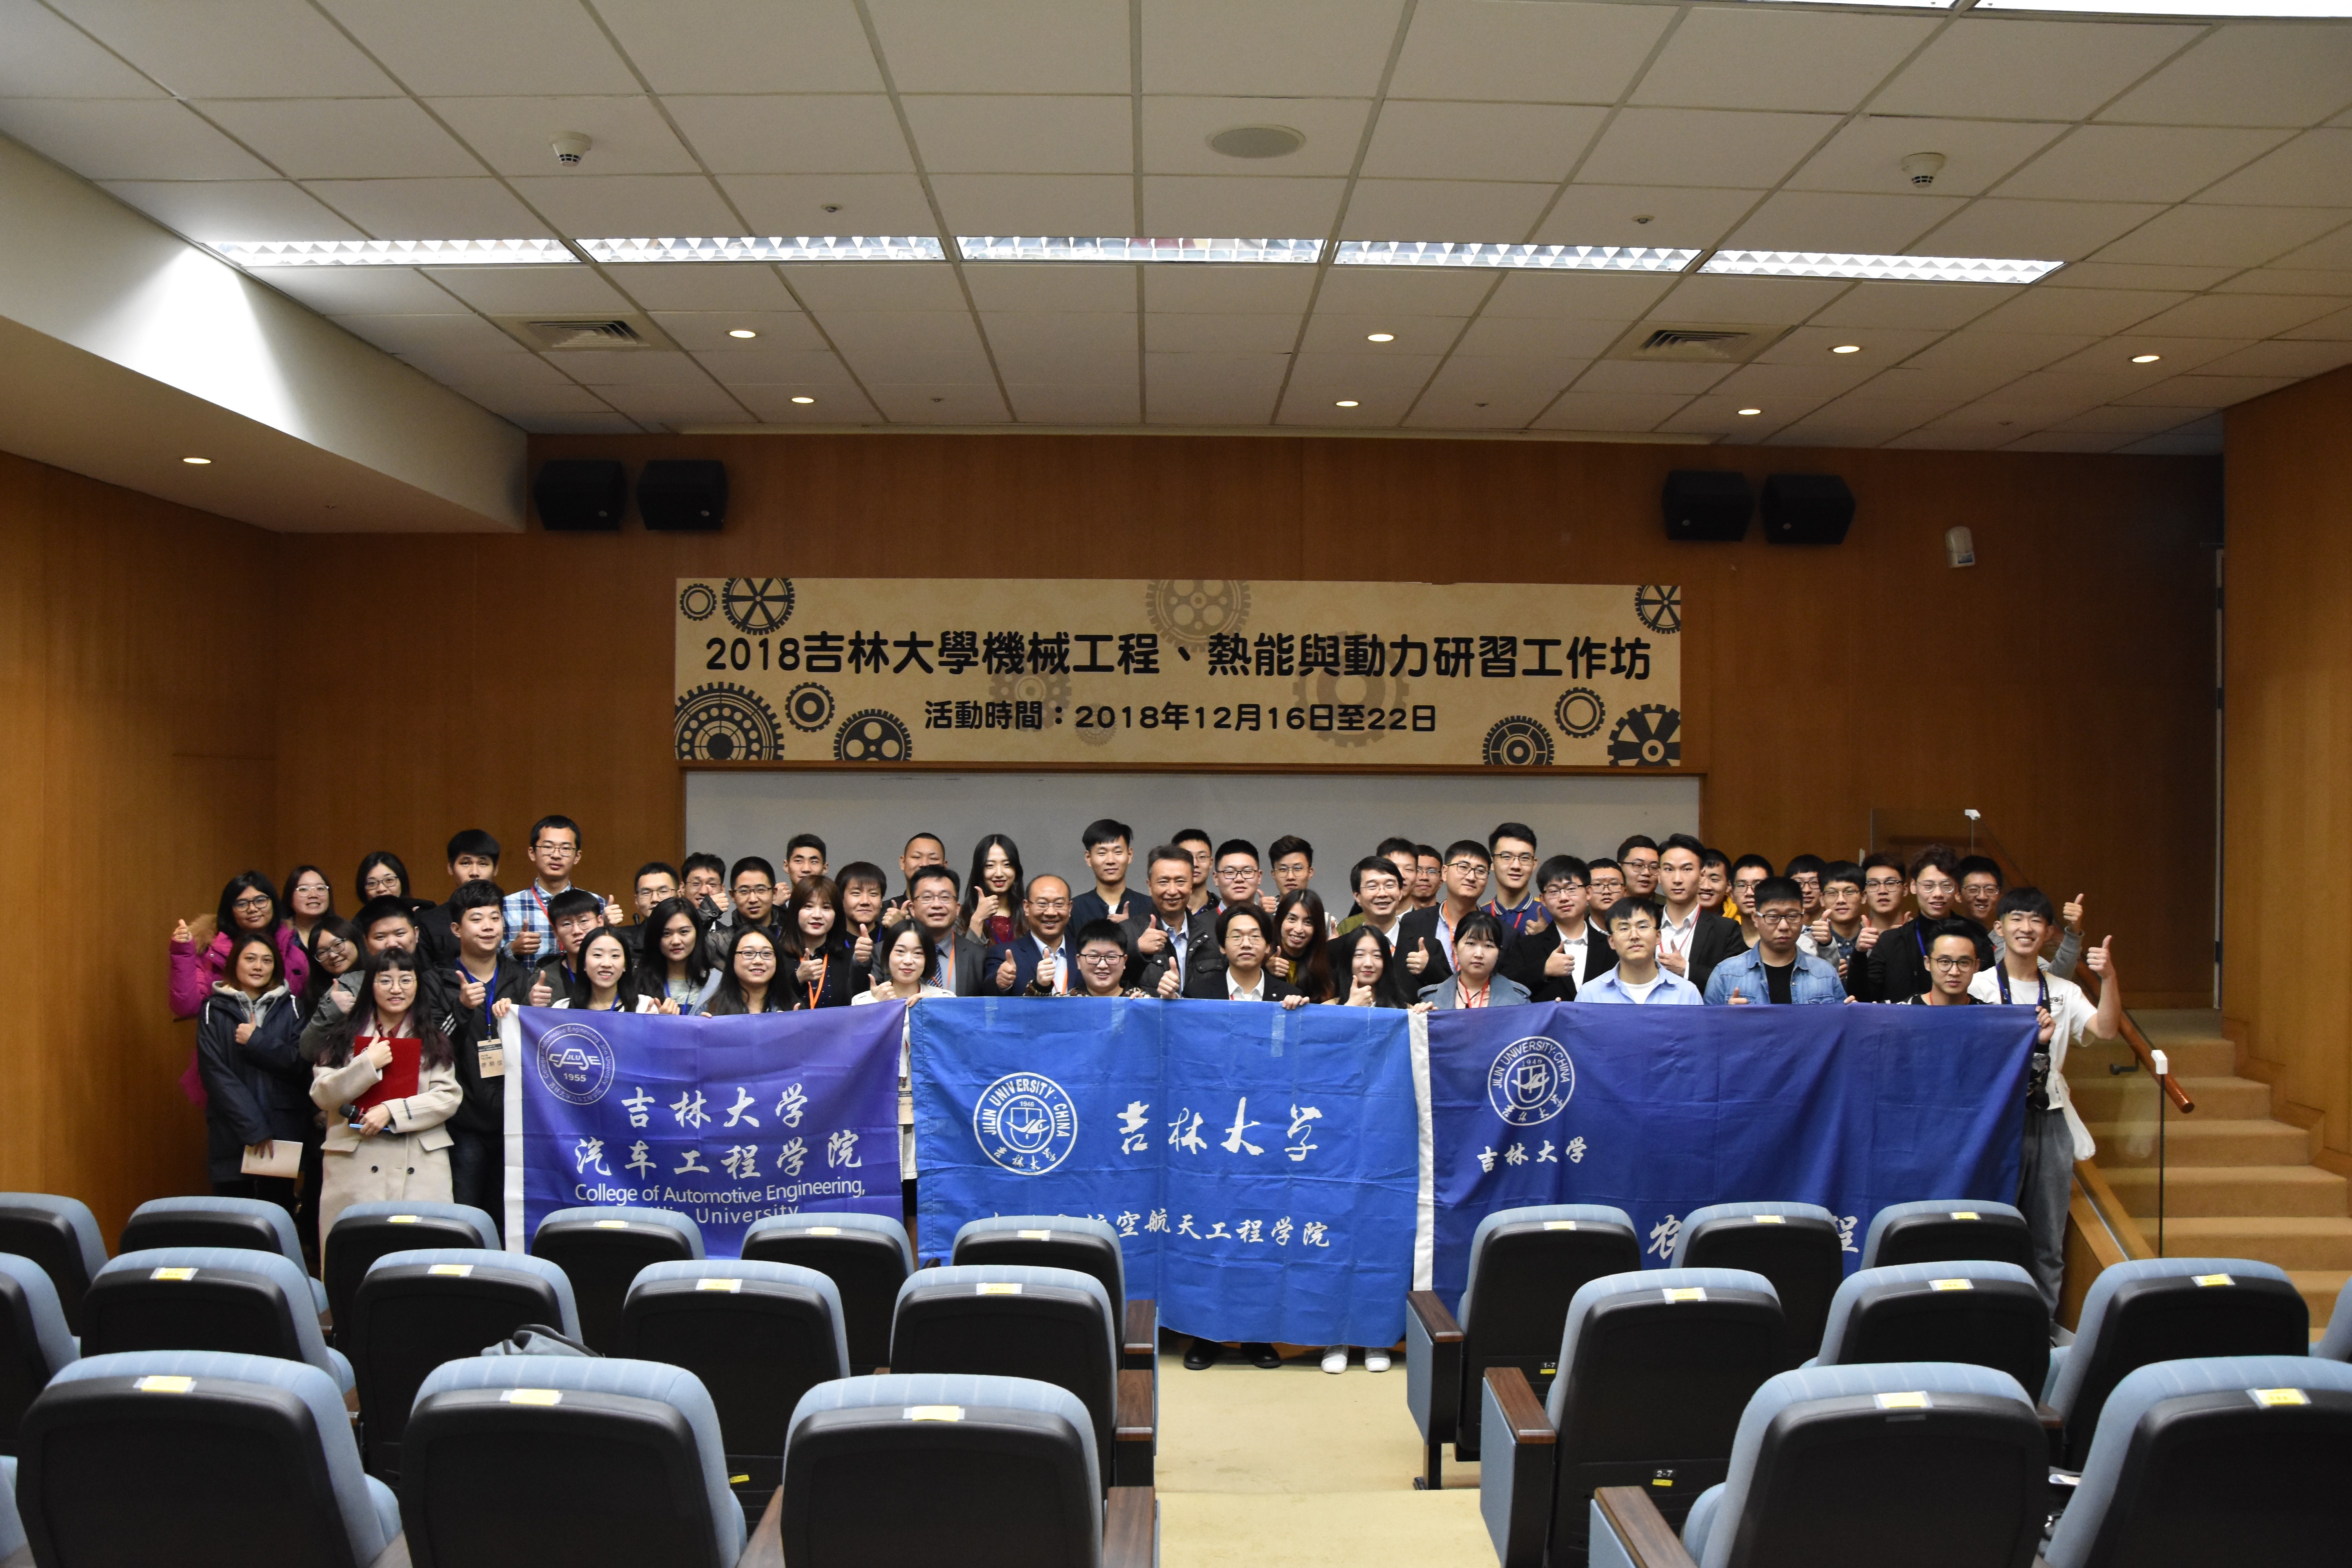 吉林大学机械与航空航天工程学院圆满完成台湾"机械工程,热能与动力